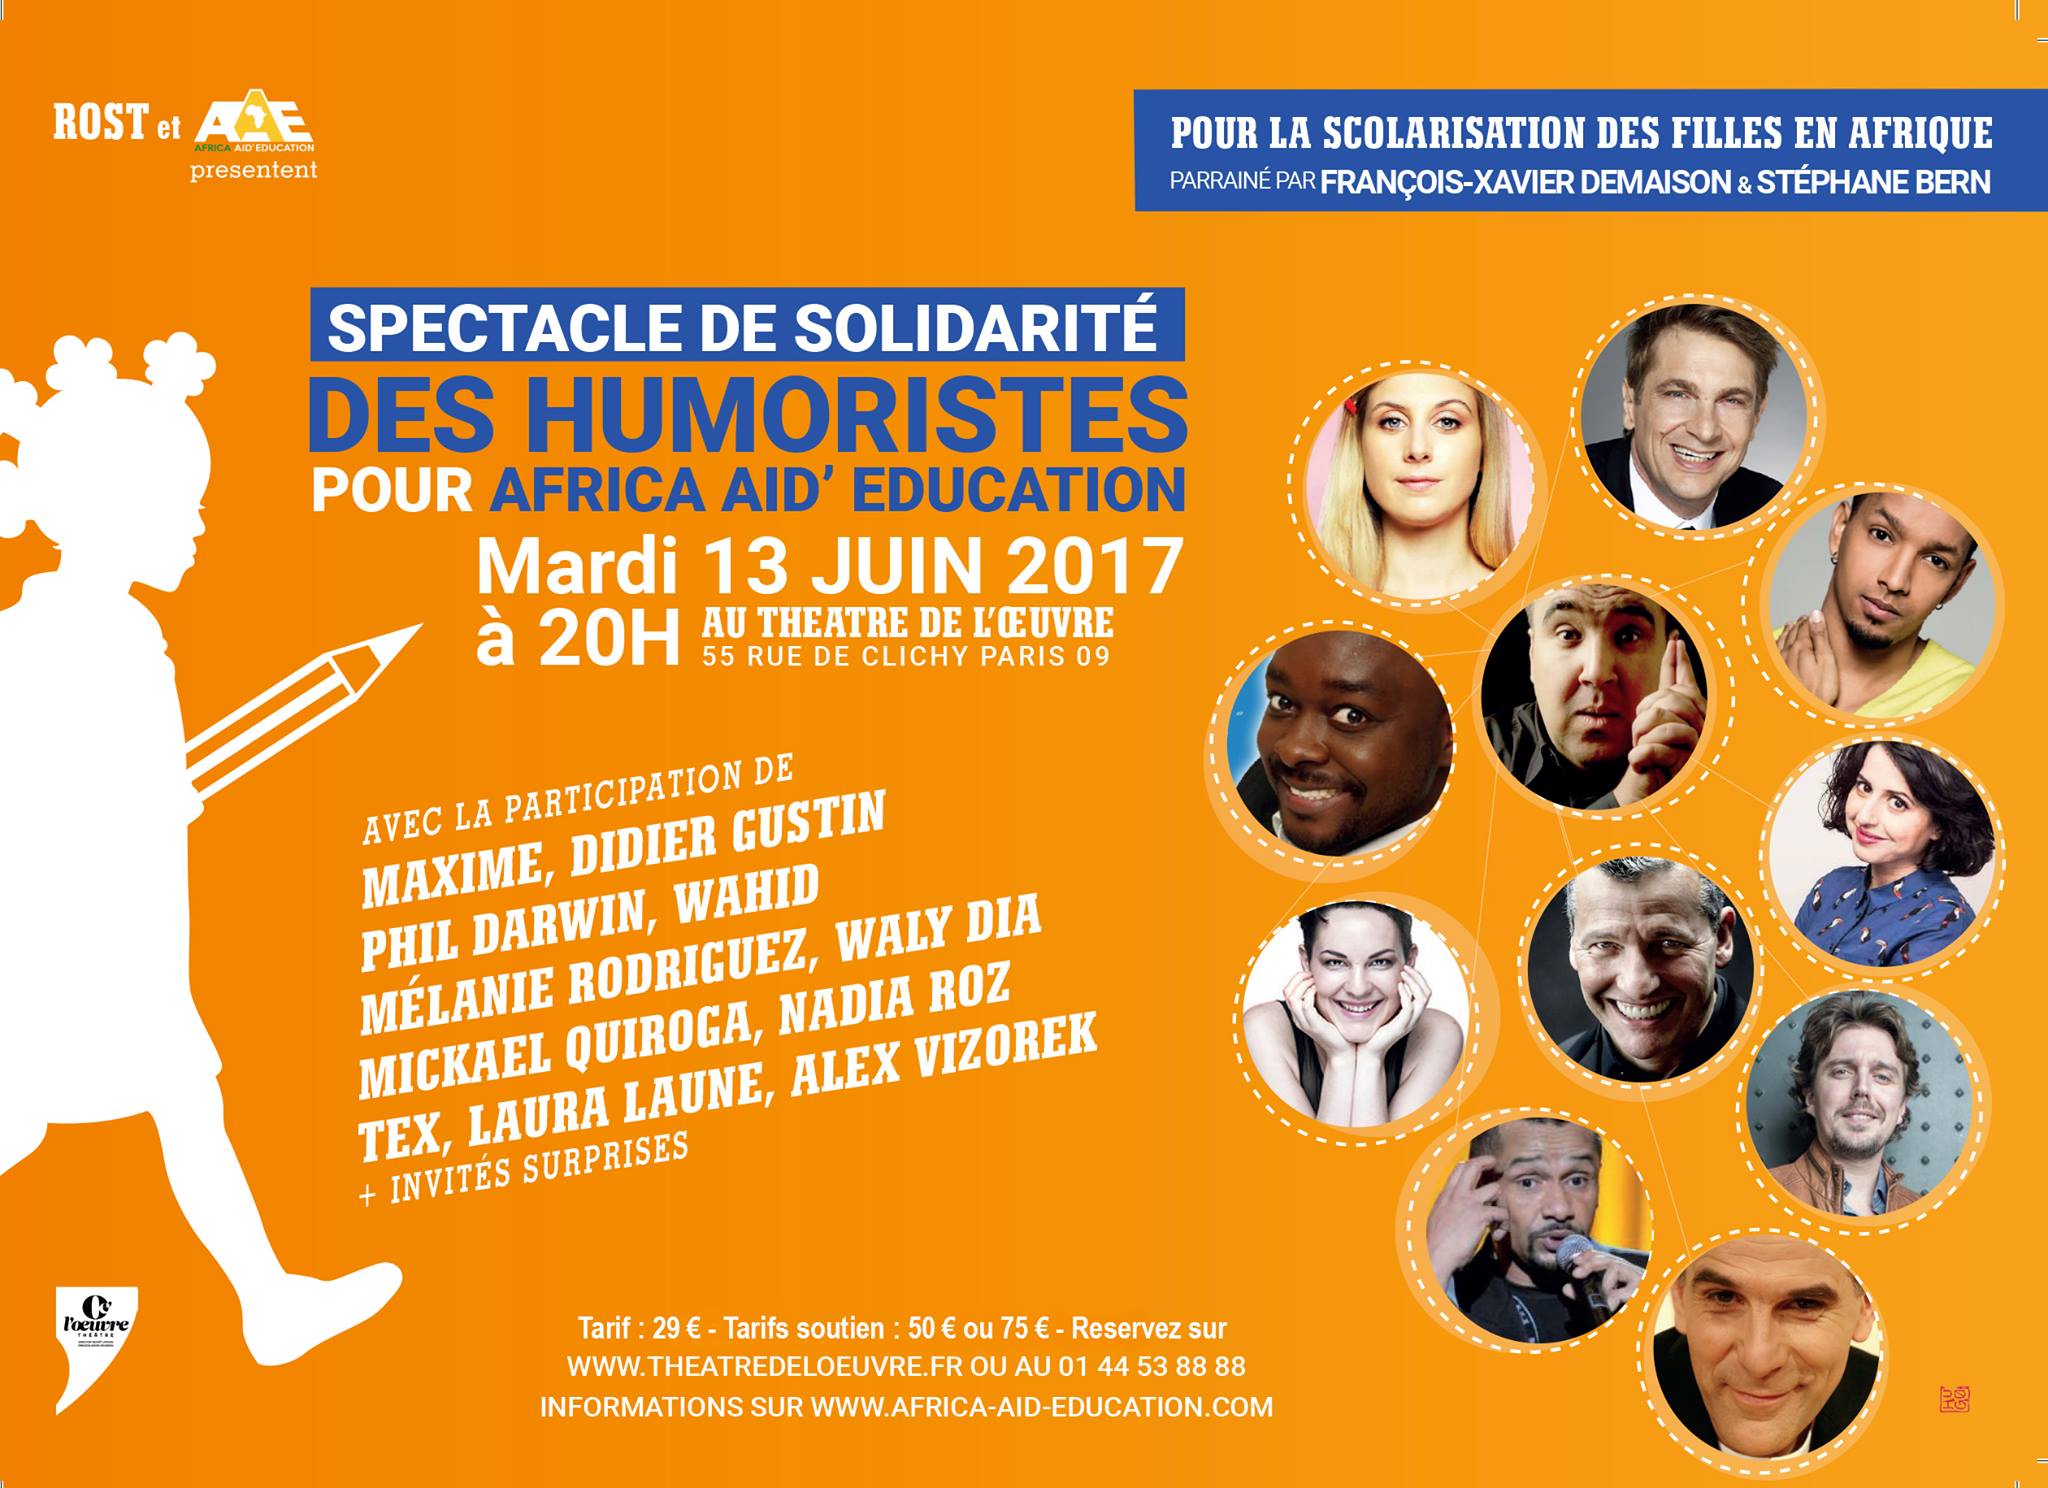 Affiche du spectacle de solidarité ayant eu lieu le 13 juin 2017